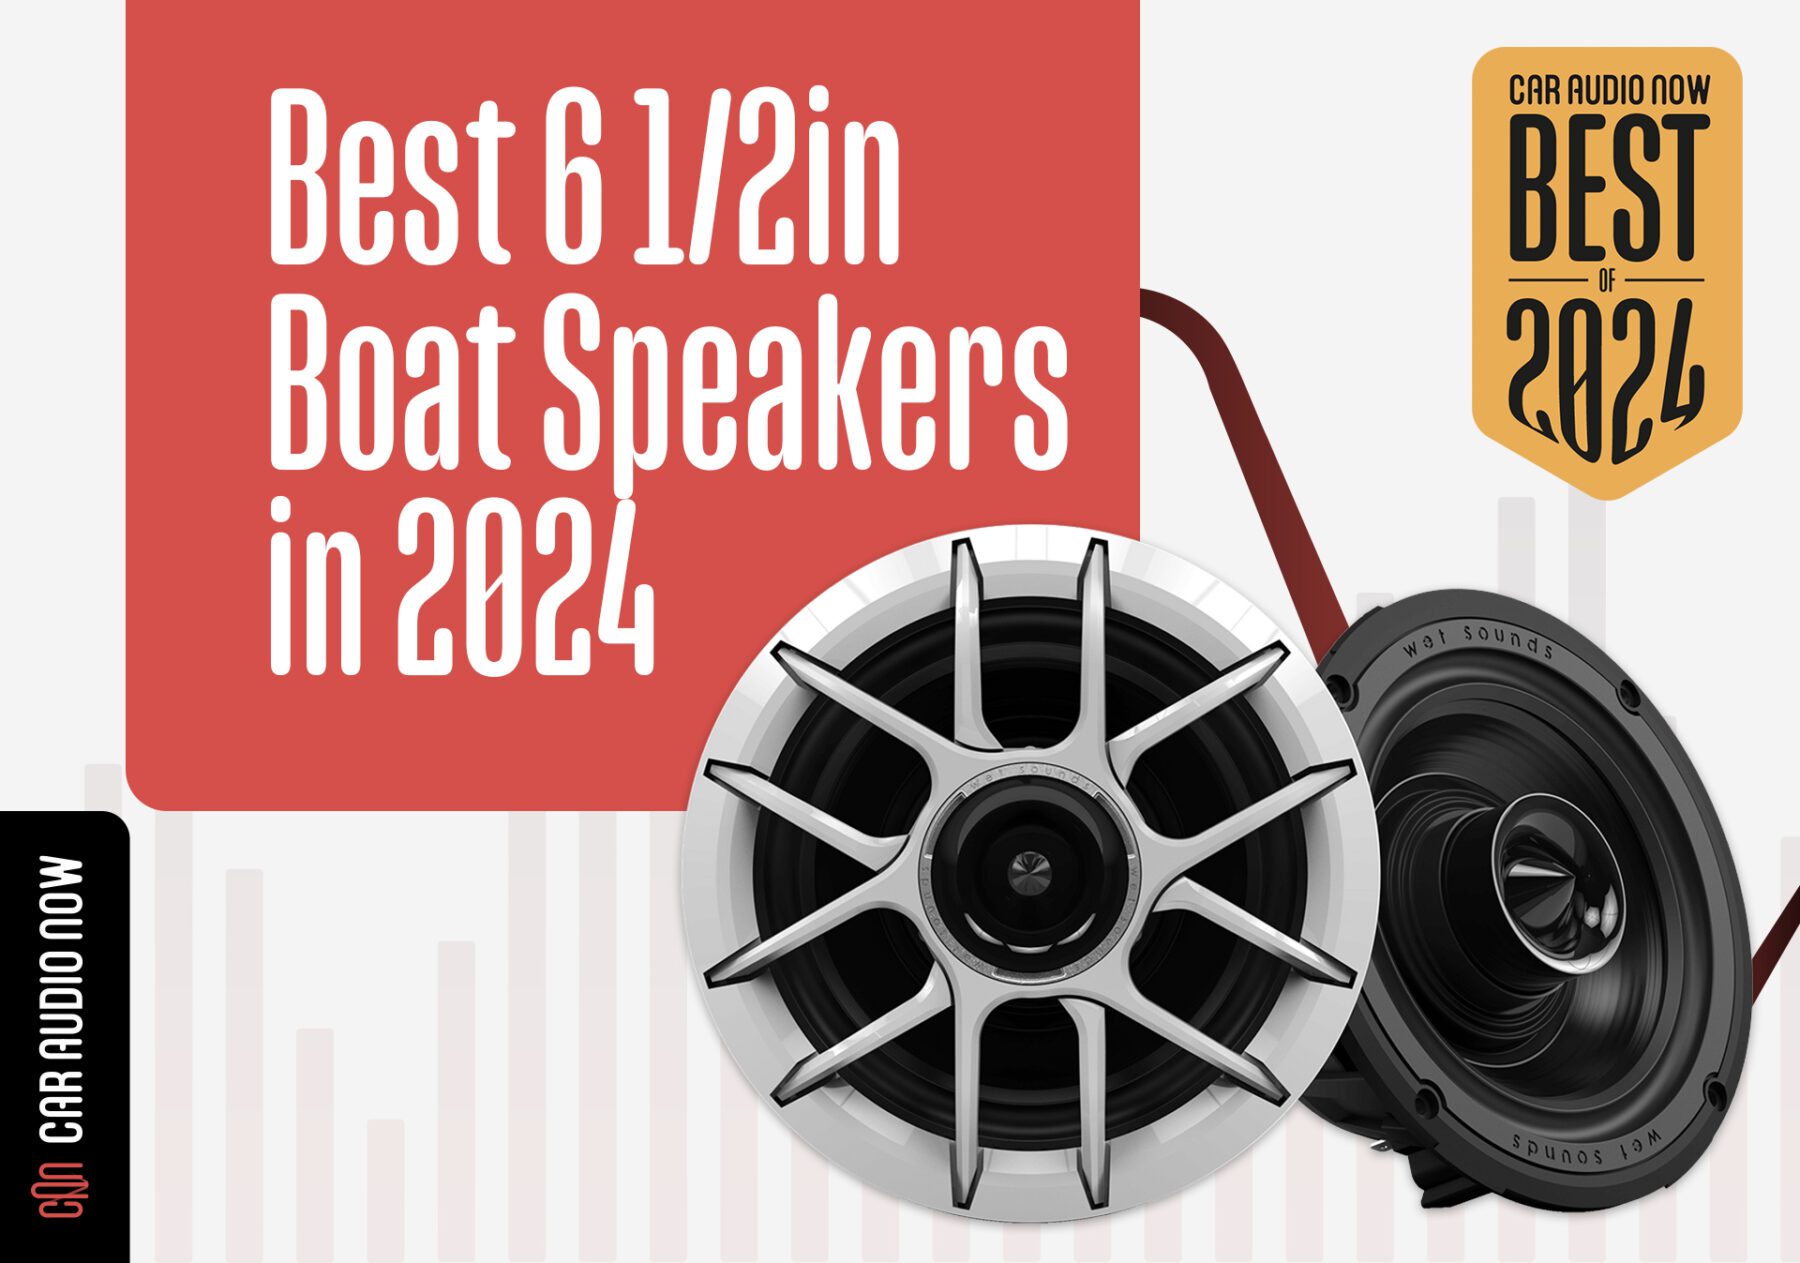 Best Boat Speakers 2024 Hero